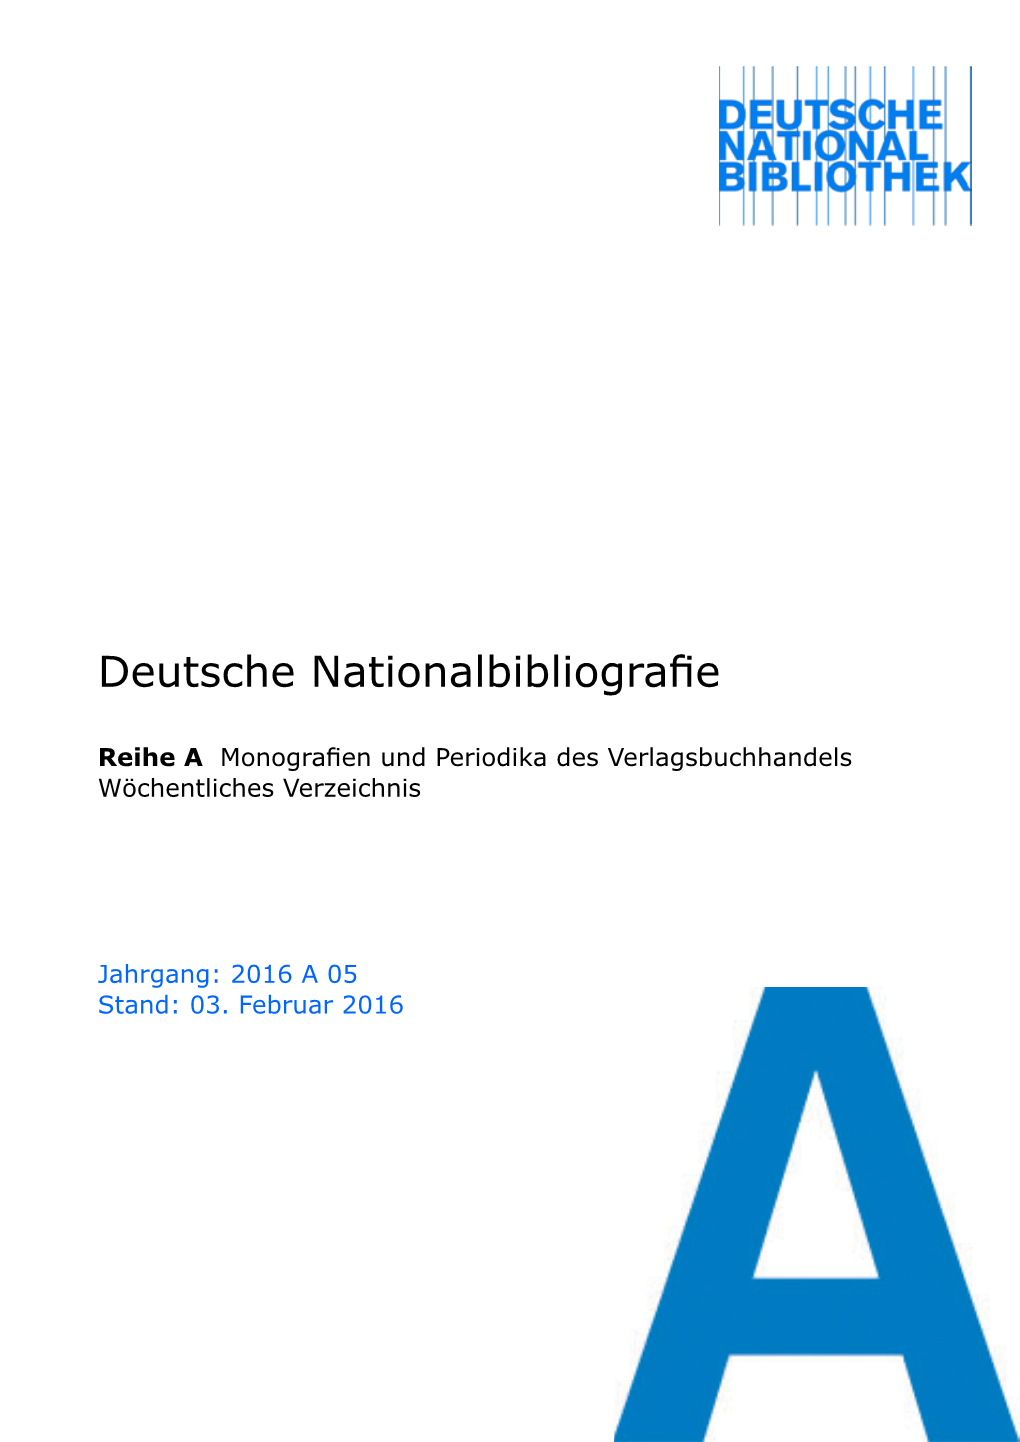 Deutsche Nationalbibliografie 2016 a 05